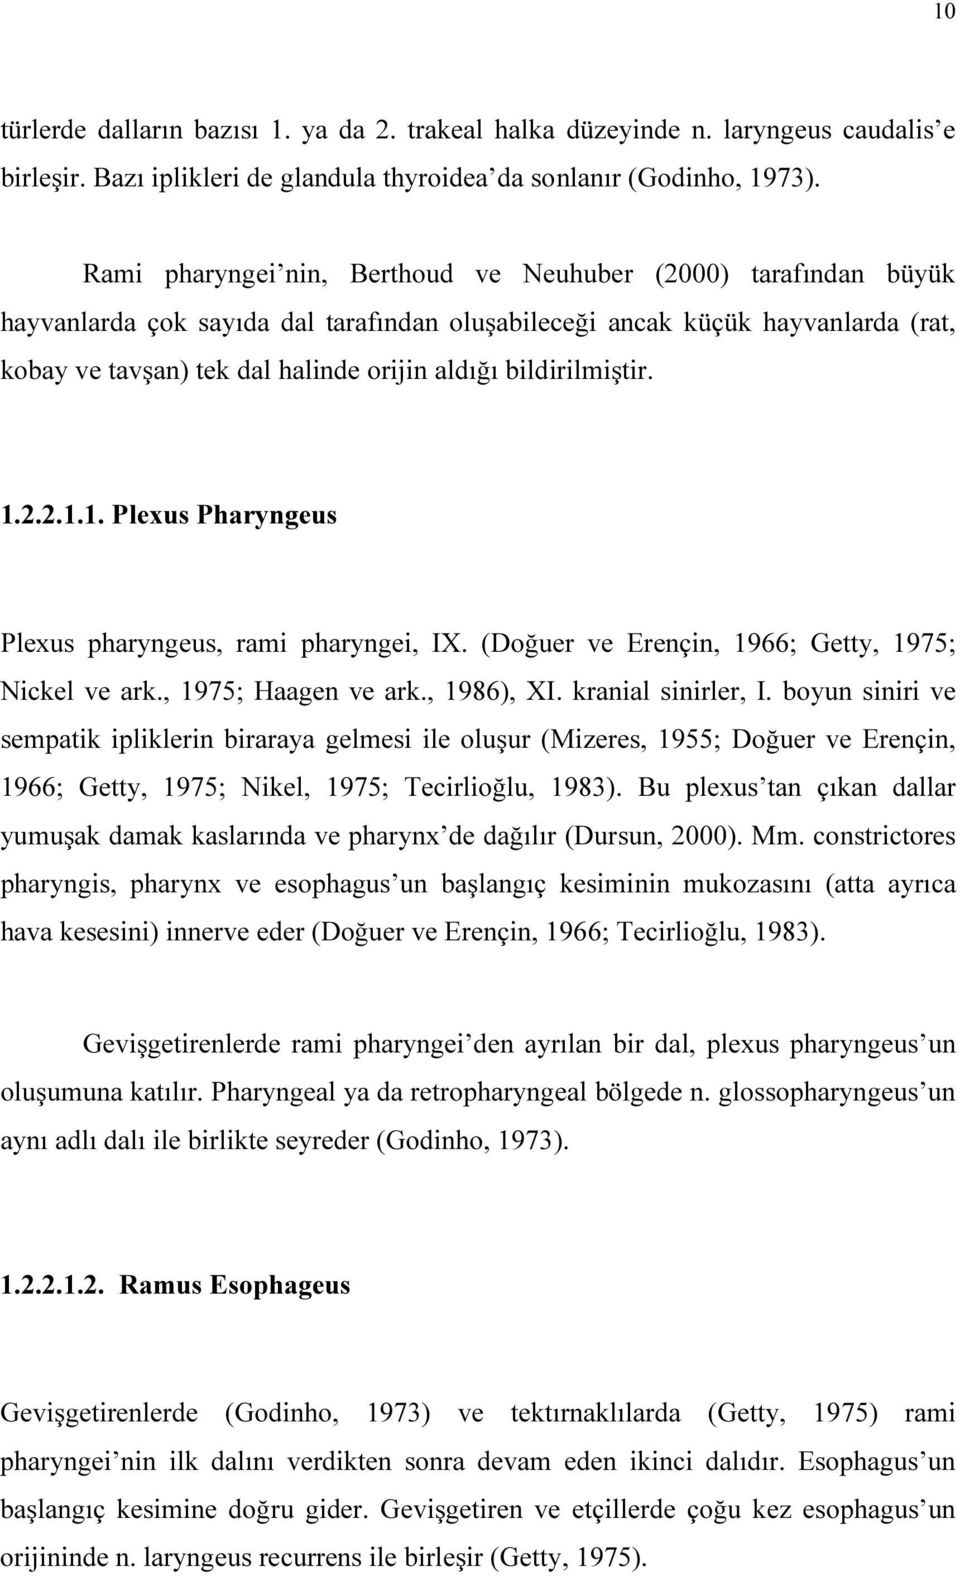 bildirilmiştir. 1.2.2.1.1. Plexus Pharyngeus Plexus pharyngeus, rami pharyngei, IX. (Doğuer ve Erençin, 1966; Getty, 1975; Nickel ve ark., 1975; Haagen ve ark., 1986), XI. kranial sinirler, I.